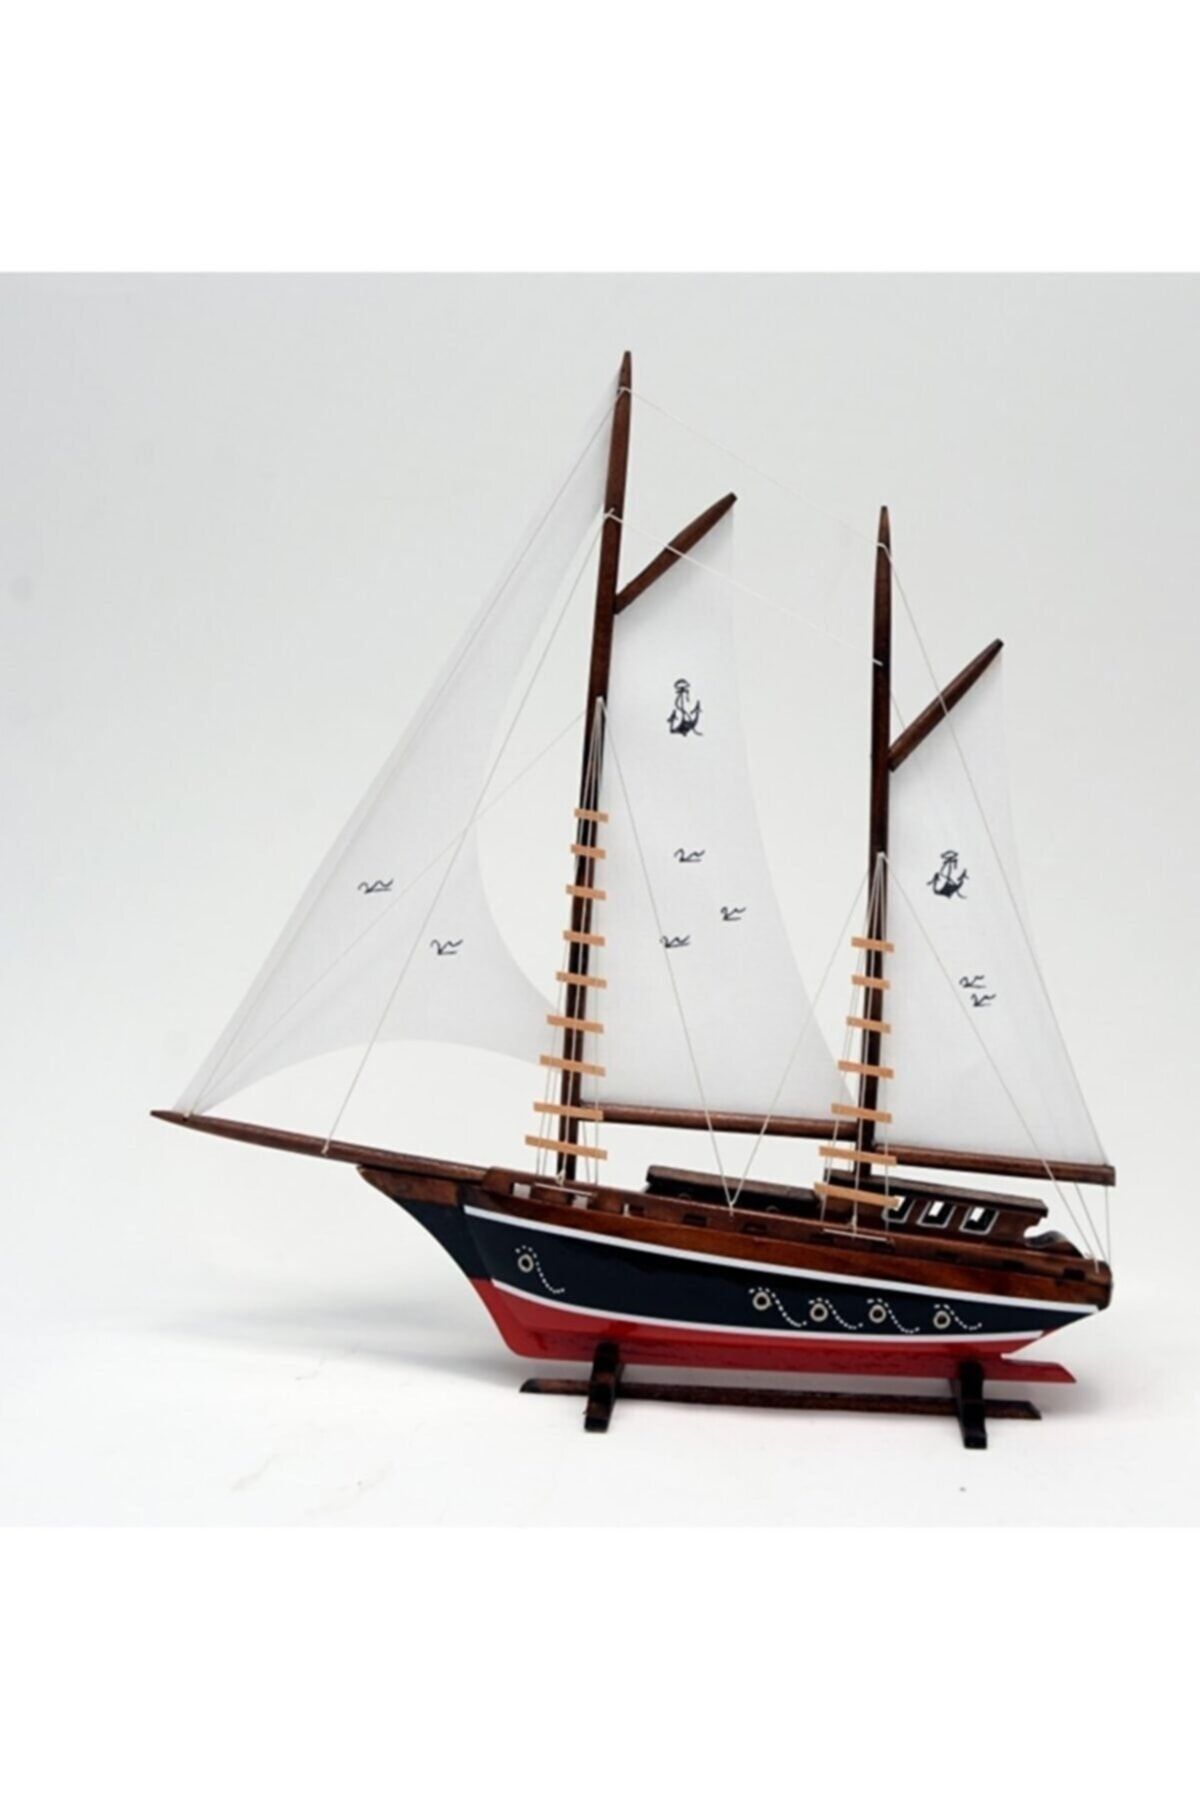 Genel Markalar Ahşap Bez Yelkenli Açık Yat Modeli – Ağaç Gemi Tekne Kayık Sandal Kotra Maketi